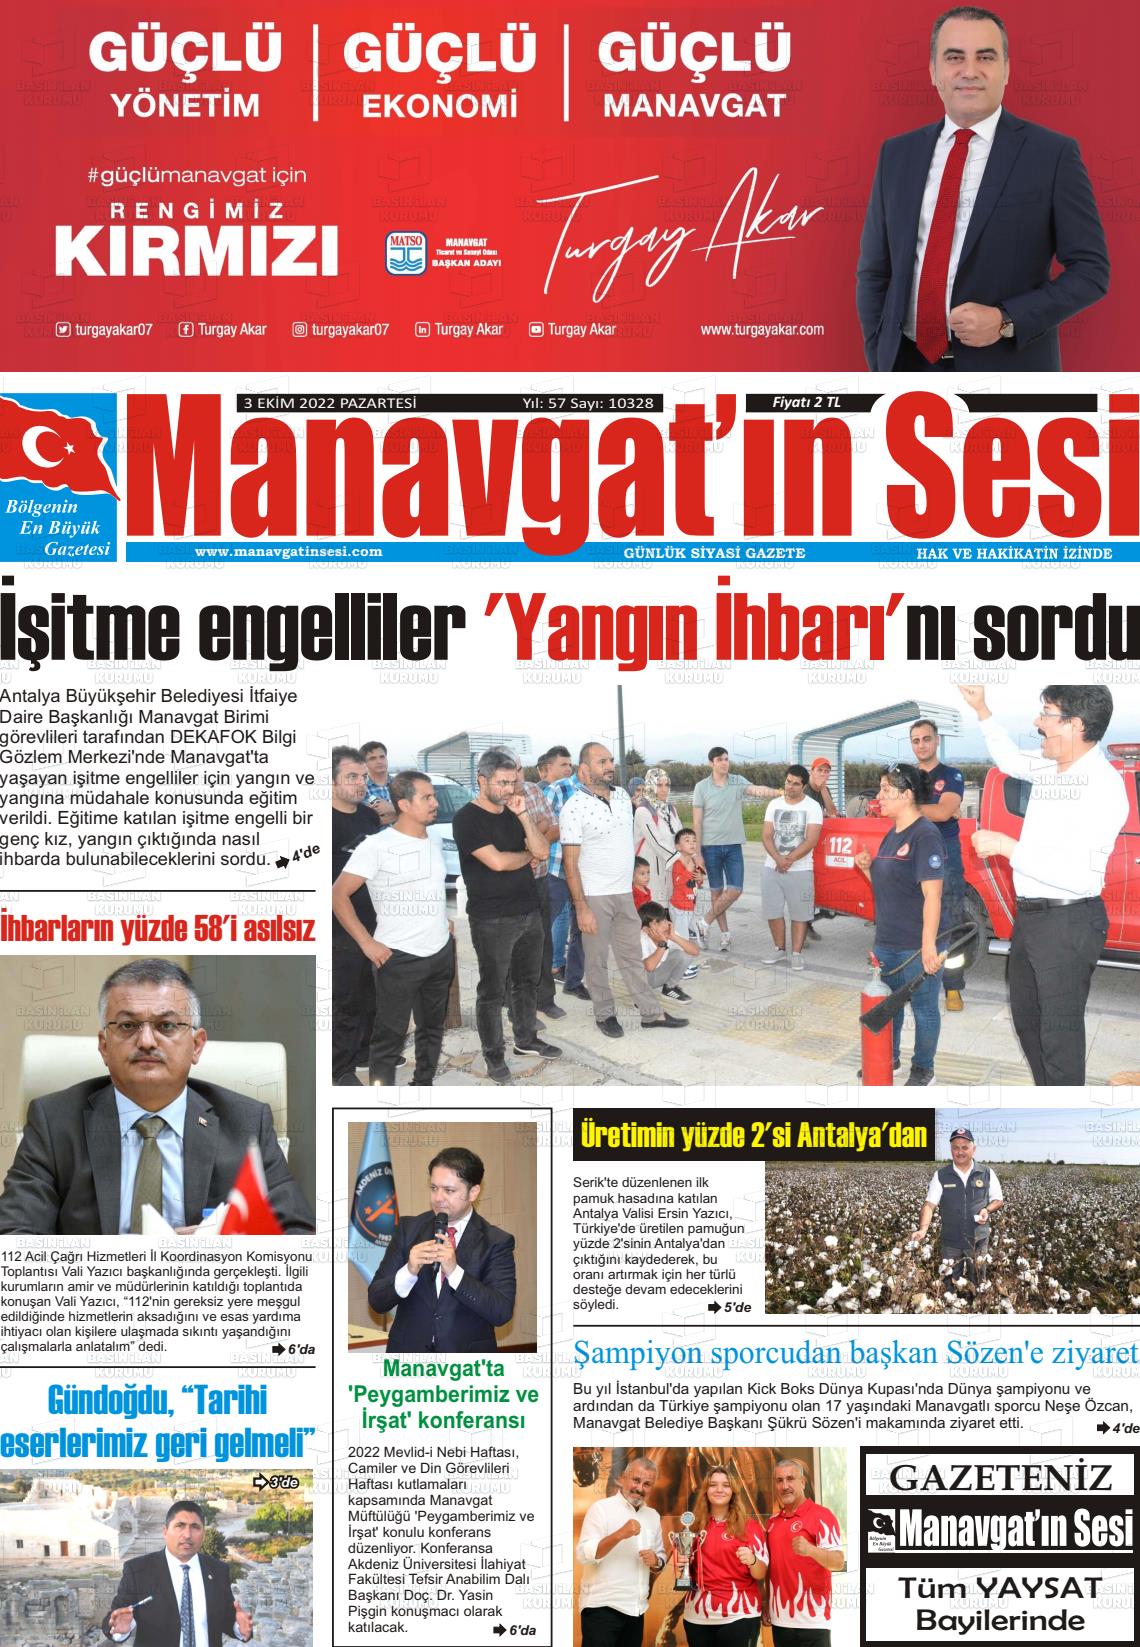 03 Ekim 2022 Manavgat'ın Sesi Gazete Manşeti